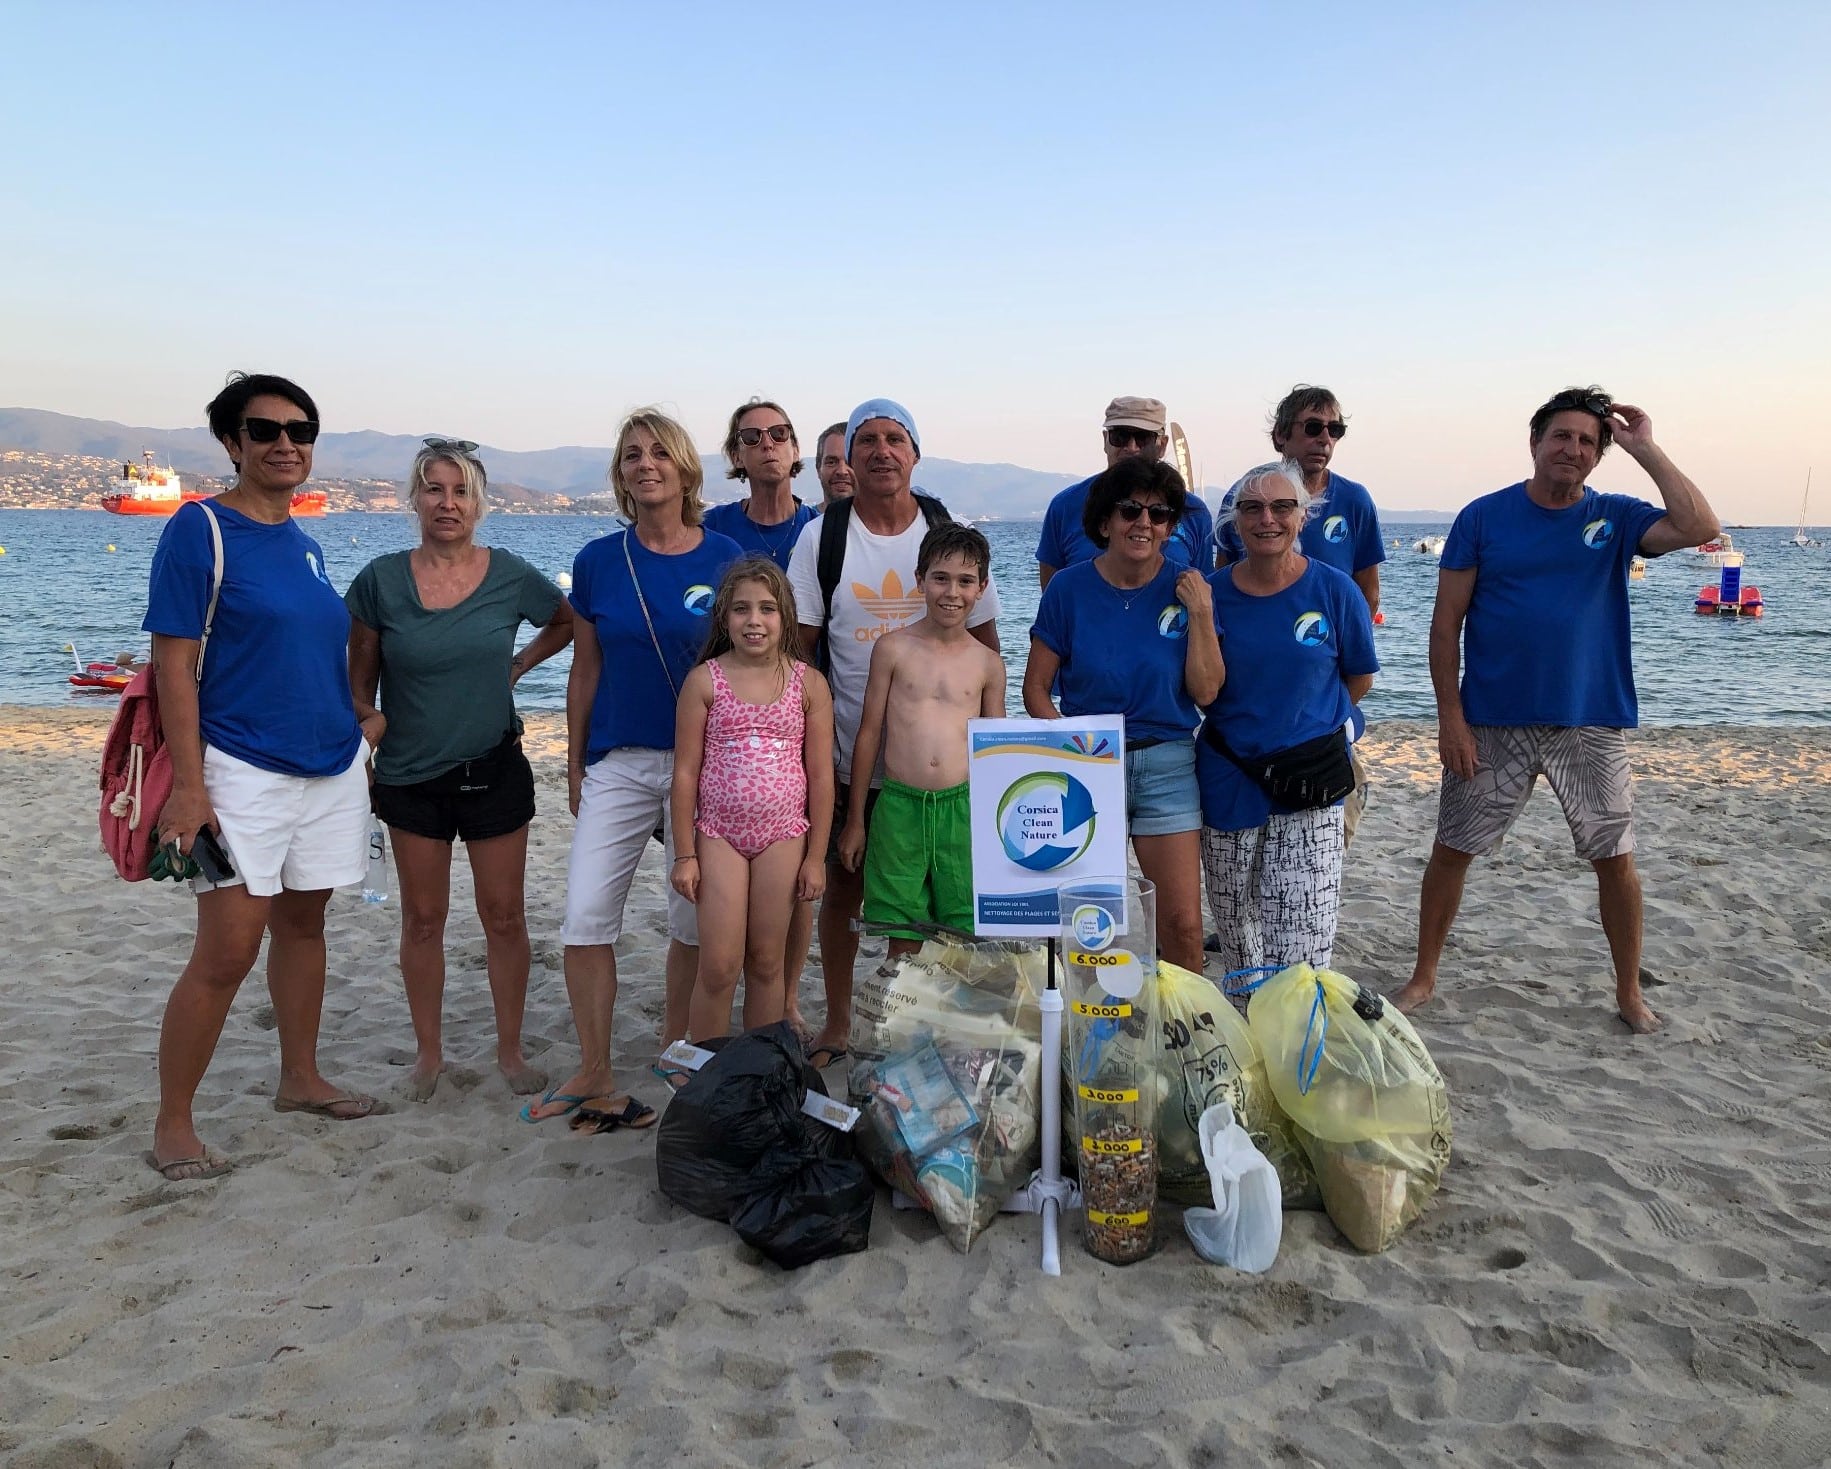 Nettoyer la plage : se sentir utile et fier